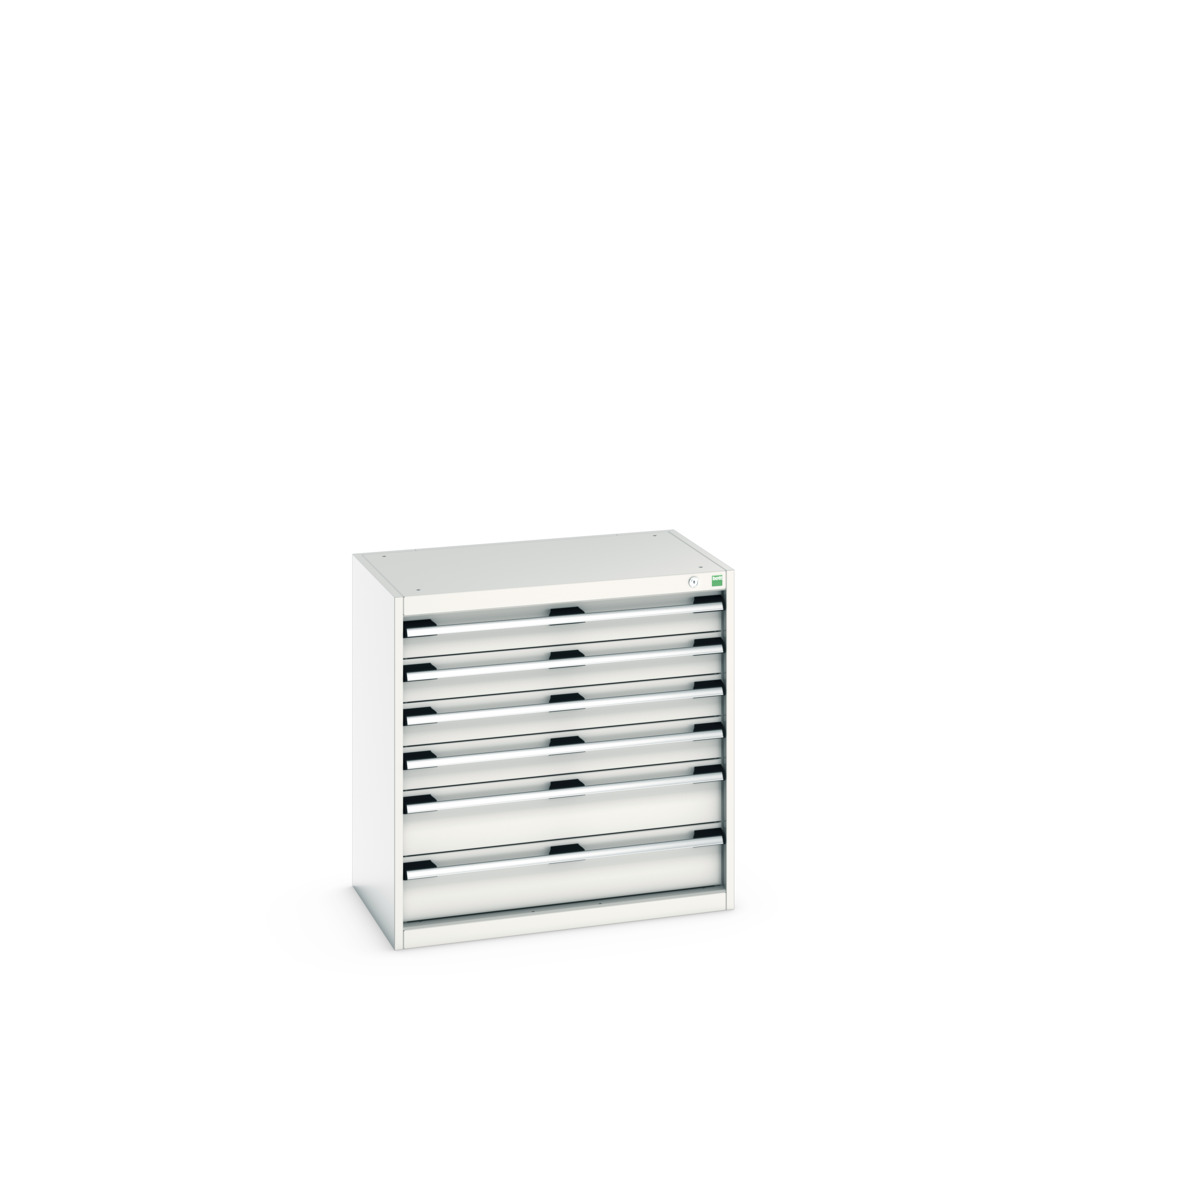 40012019.16V - cubio drawer cabinet